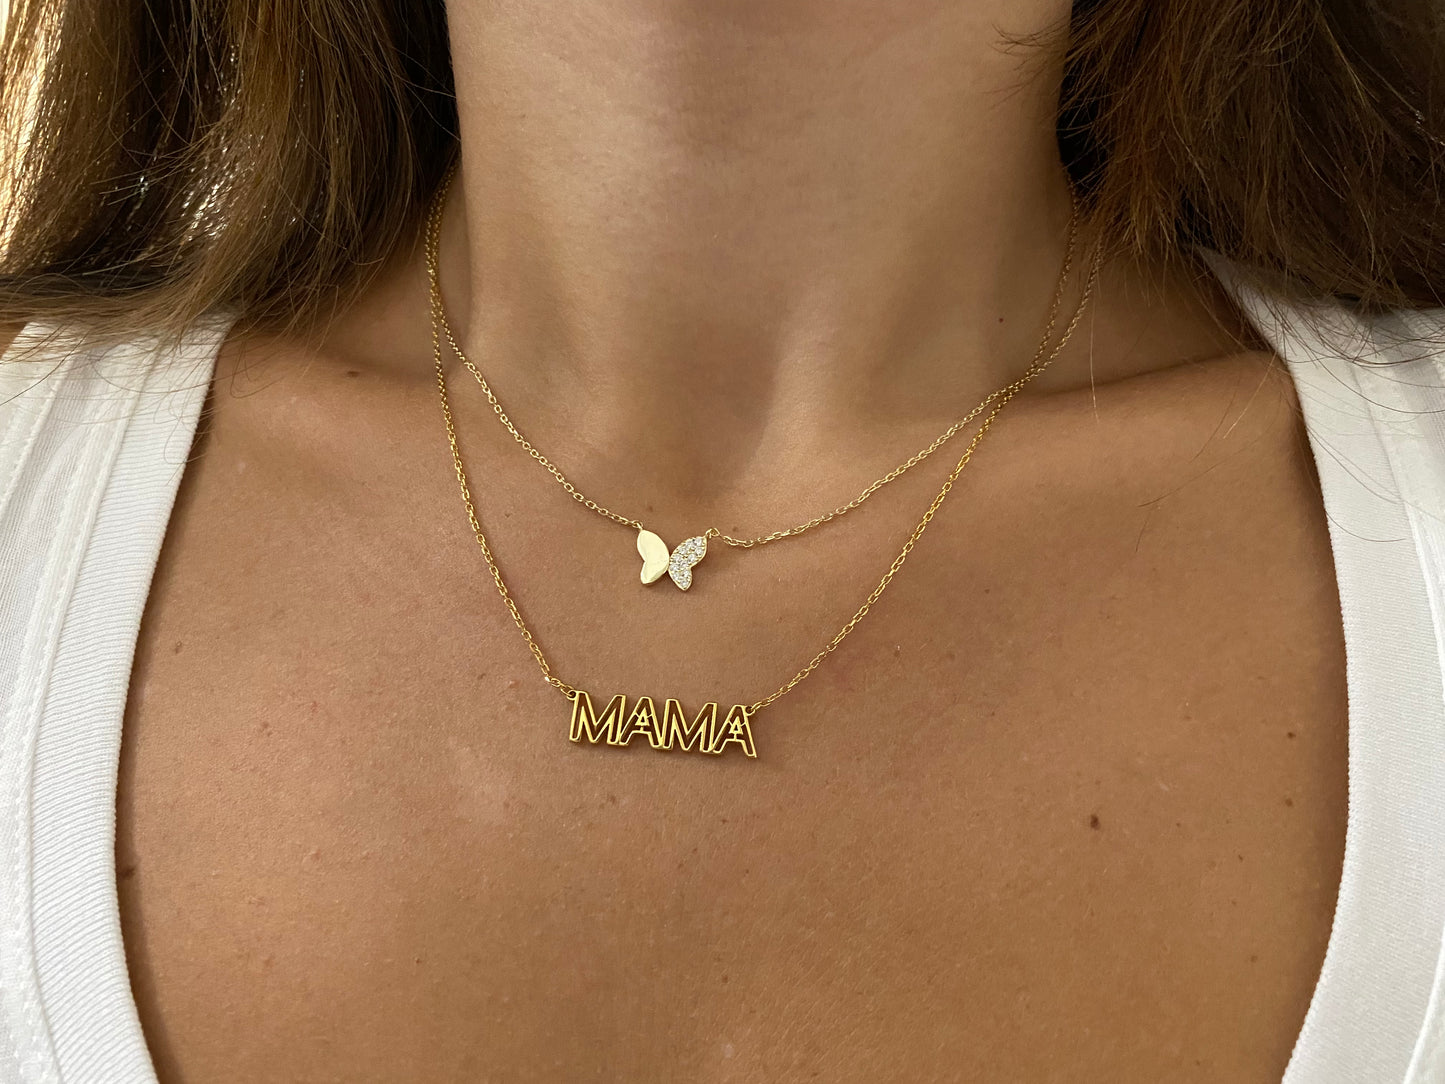 Jenny Customized Name Necklace